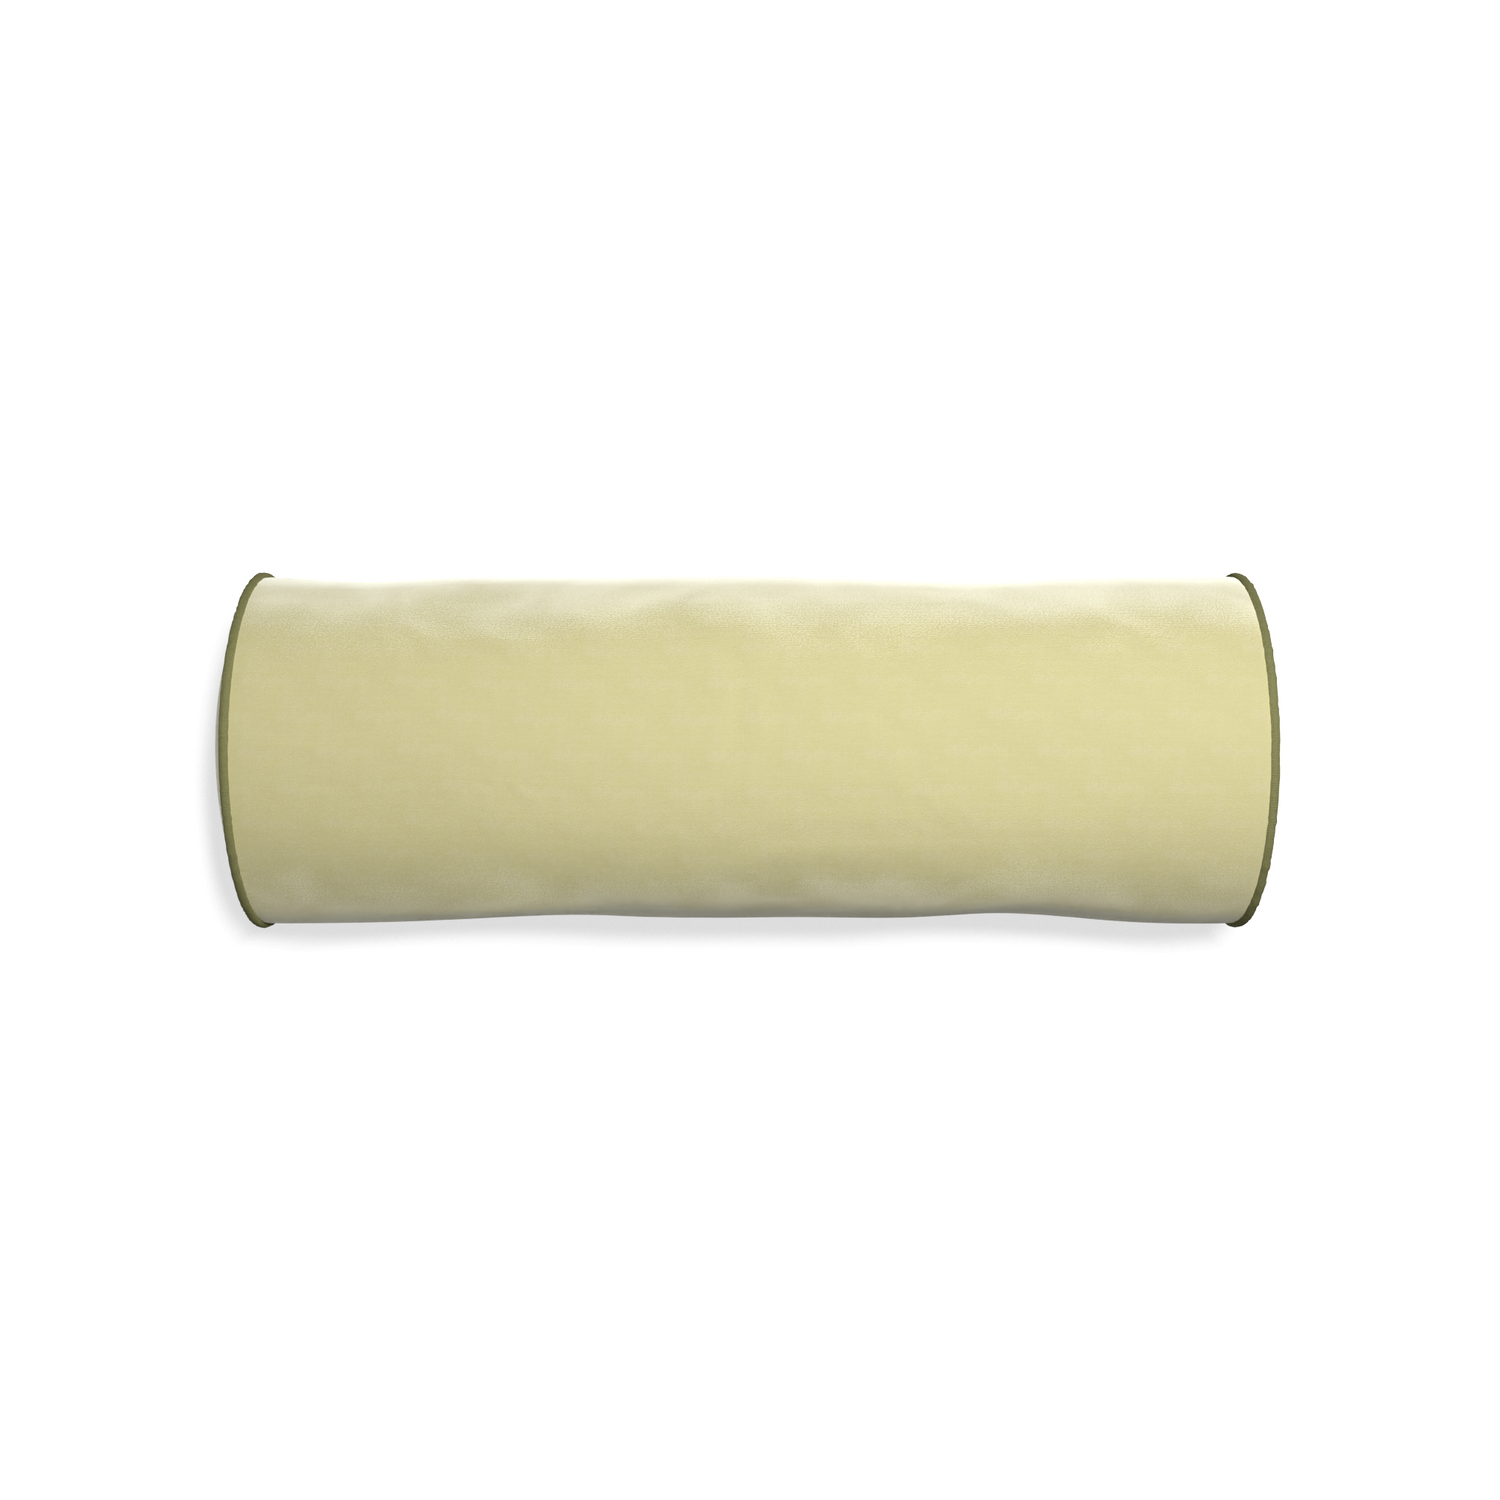 Bolster pear velvet custom pillow with moss piping on white background